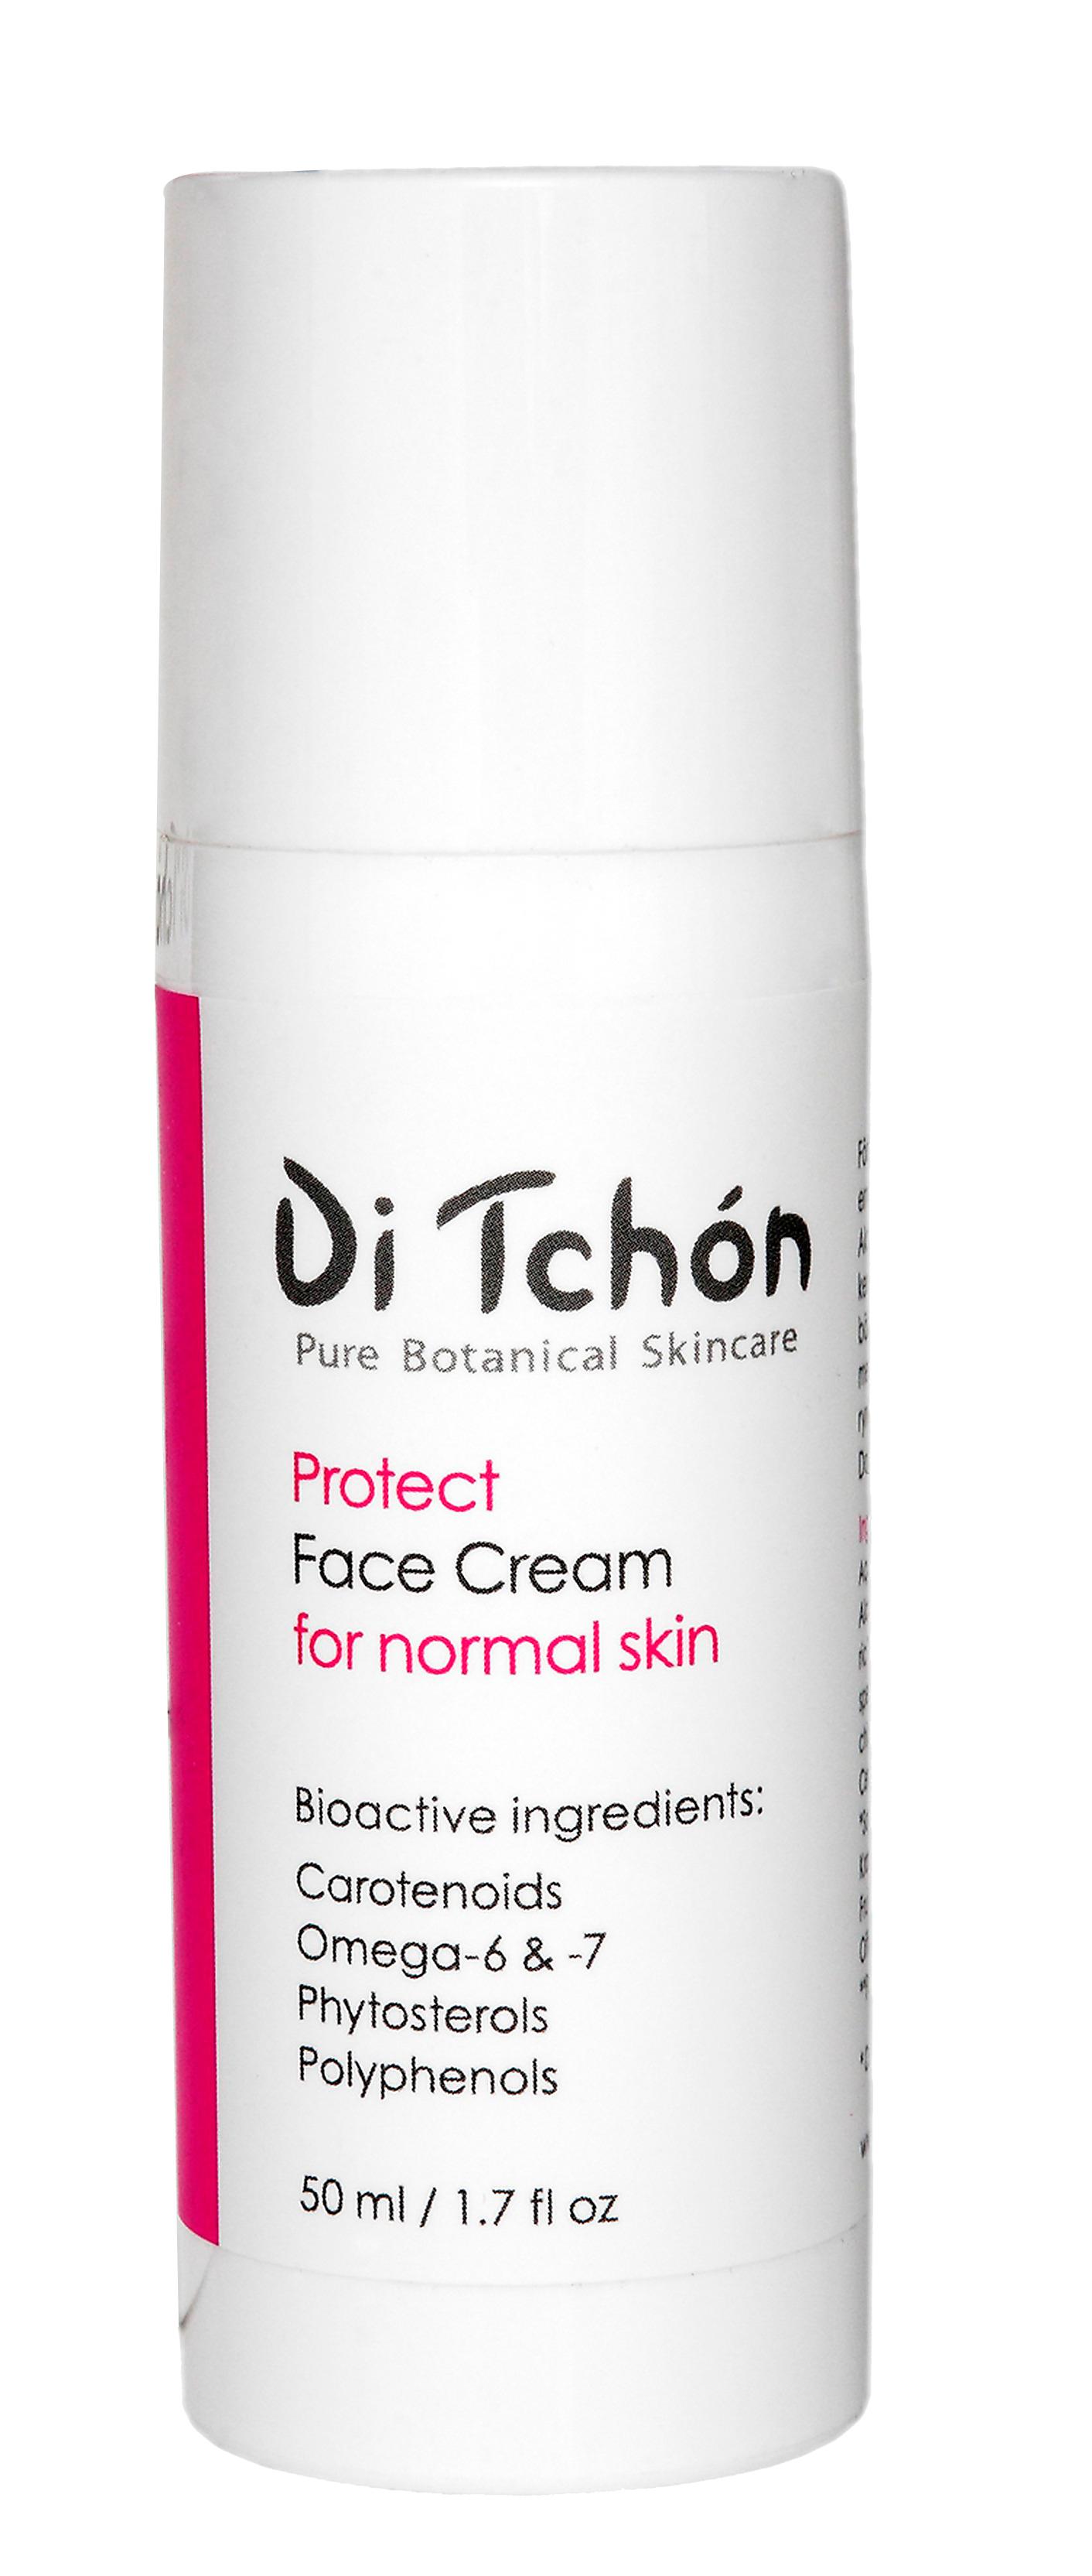 Skyddsdräkt Svenska Di Tchón använder rosmarin i alla sina produkter. Den skyddar oljorna från att härskna, och fungerar som en antioxidant i huden. “Protect face cream” förbättrar hudens försvar mot UV-ljus och föroreningar. 
Di Tchón, “Protect face cream”, 435 kronor, 50 ml, Ditchon.se.